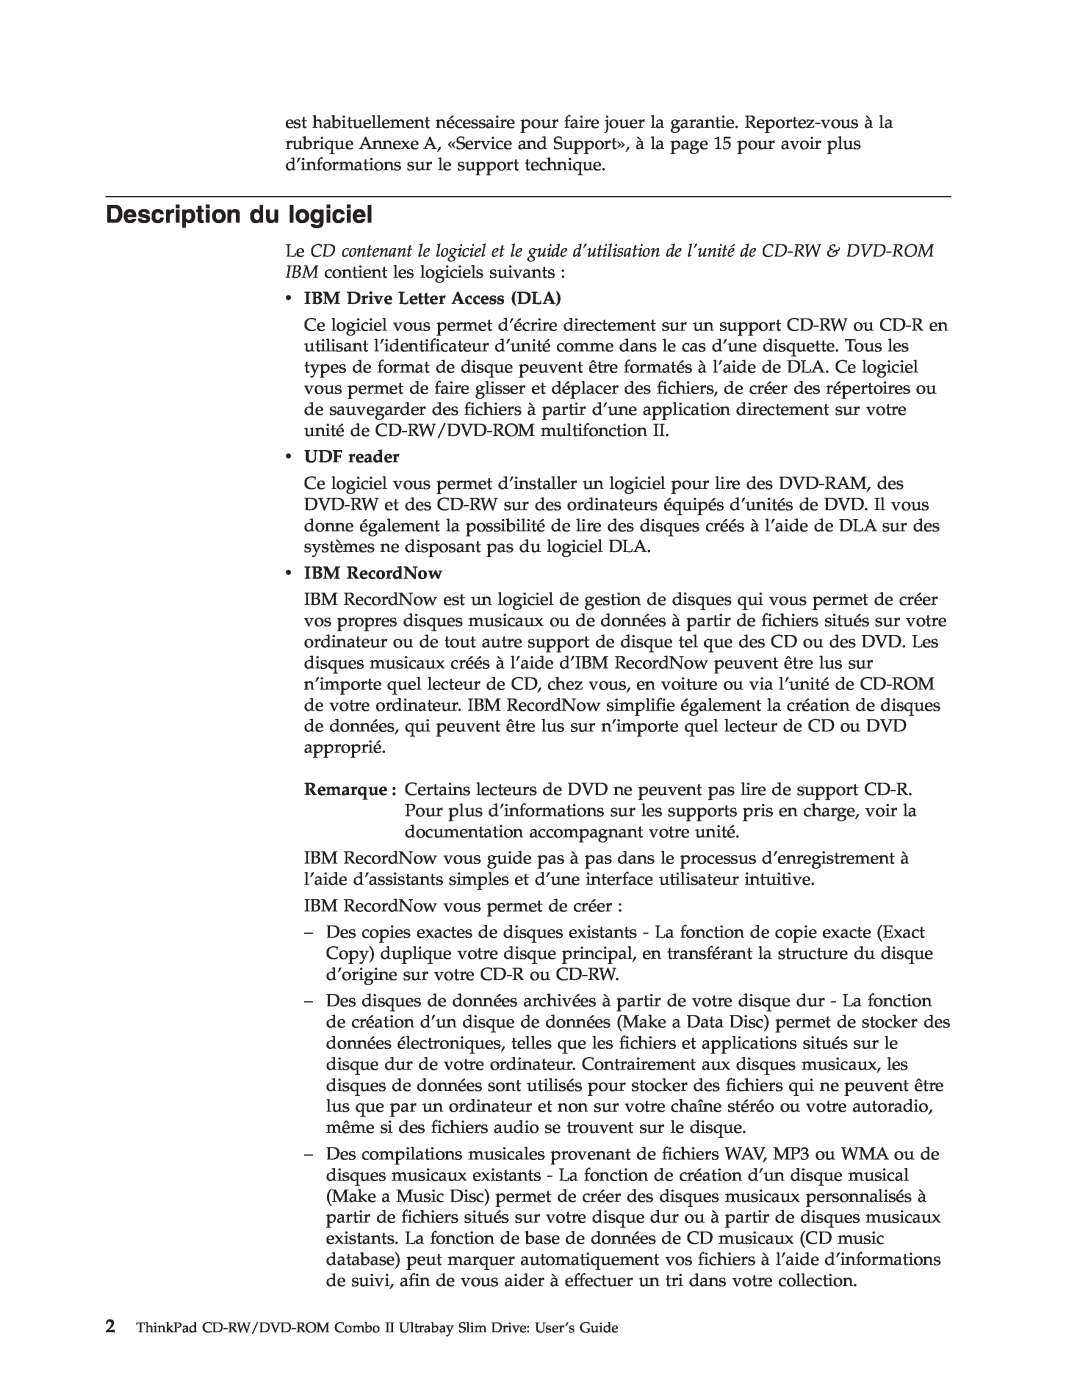 IBM 73P3292 manual Description du logiciel, v IBM Drive Letter Access DLA, v UDF reader, v IBM RecordNow 